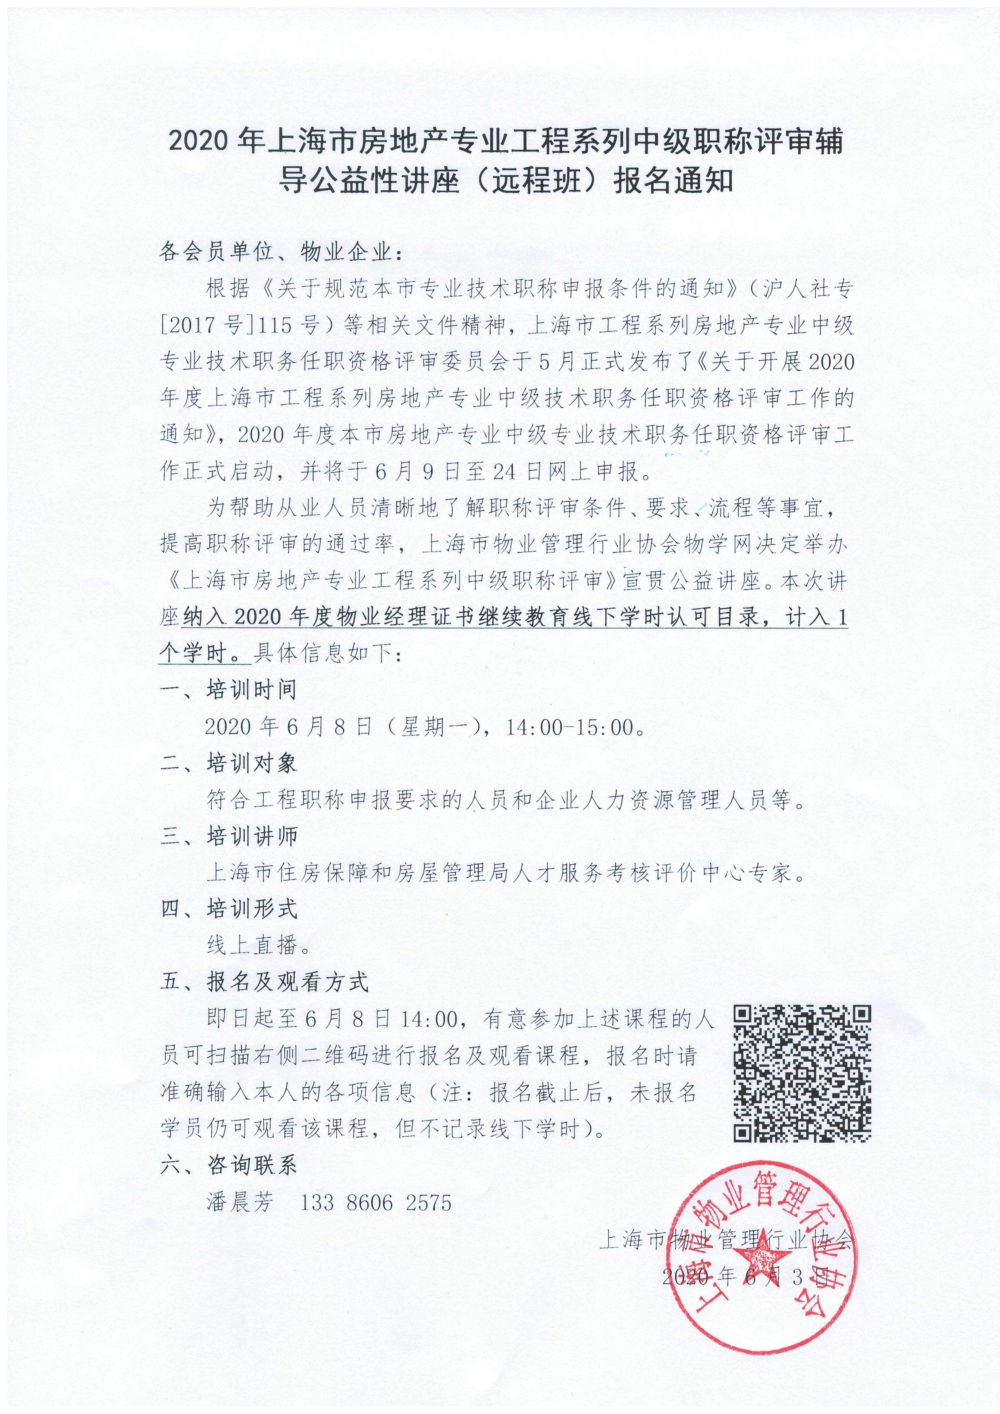 2020年上海市房地产专业工程系列中级职称评审辅导公益讲座（远程班）报名通1知.jpg